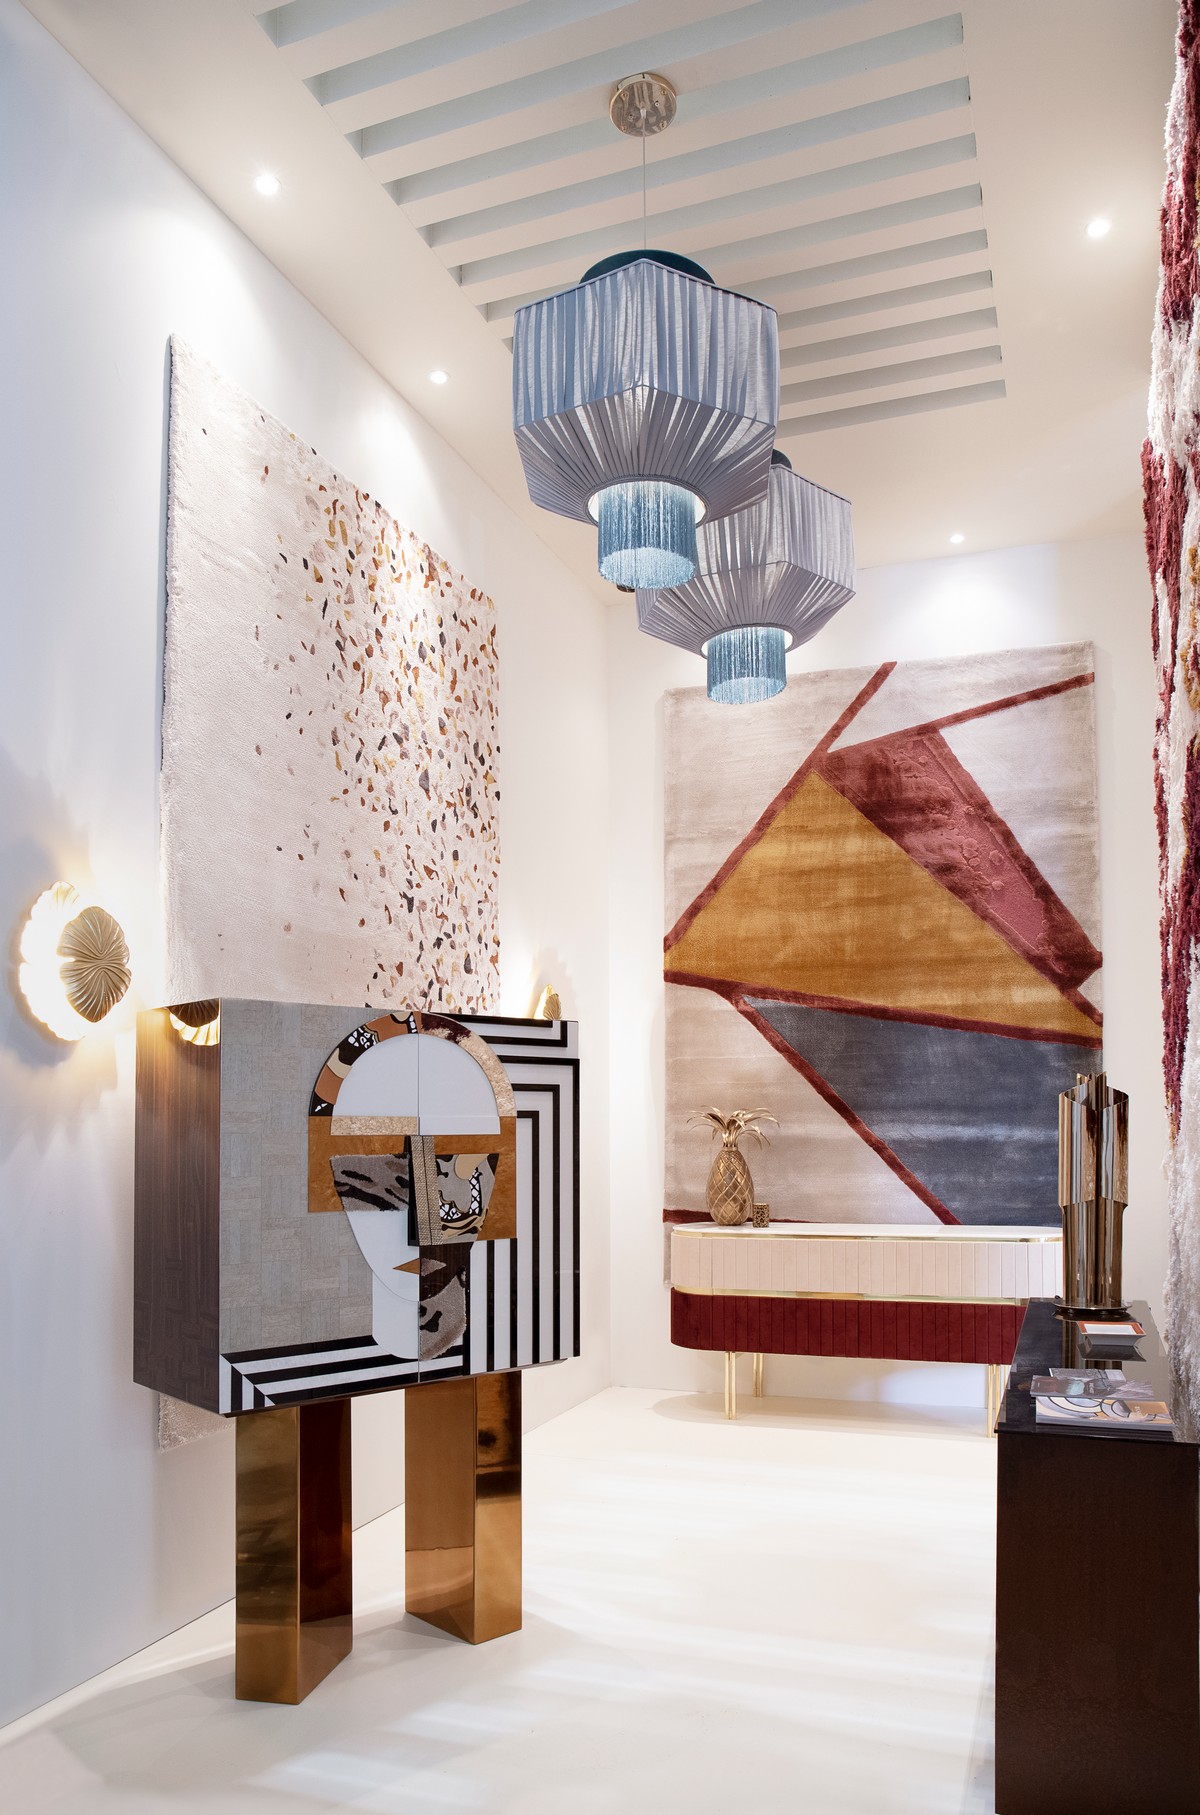 Salone del Mobile Milano: New Living Room Designs